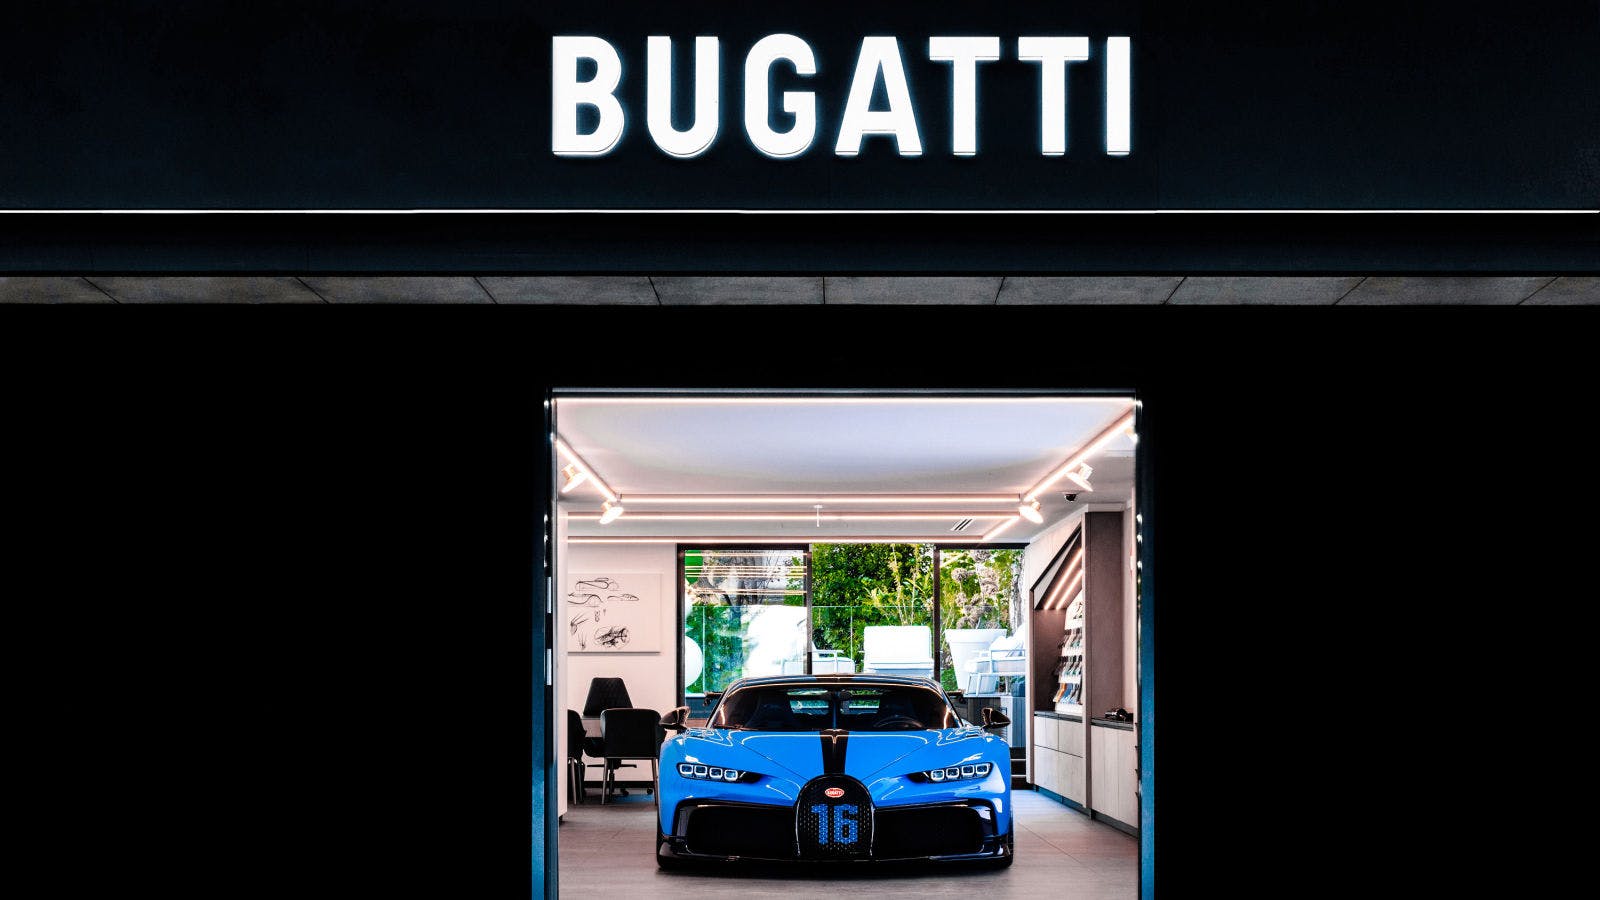 Das neue Erscheinungsbild von Bugatti bei den Bugatti Handelspartnern.